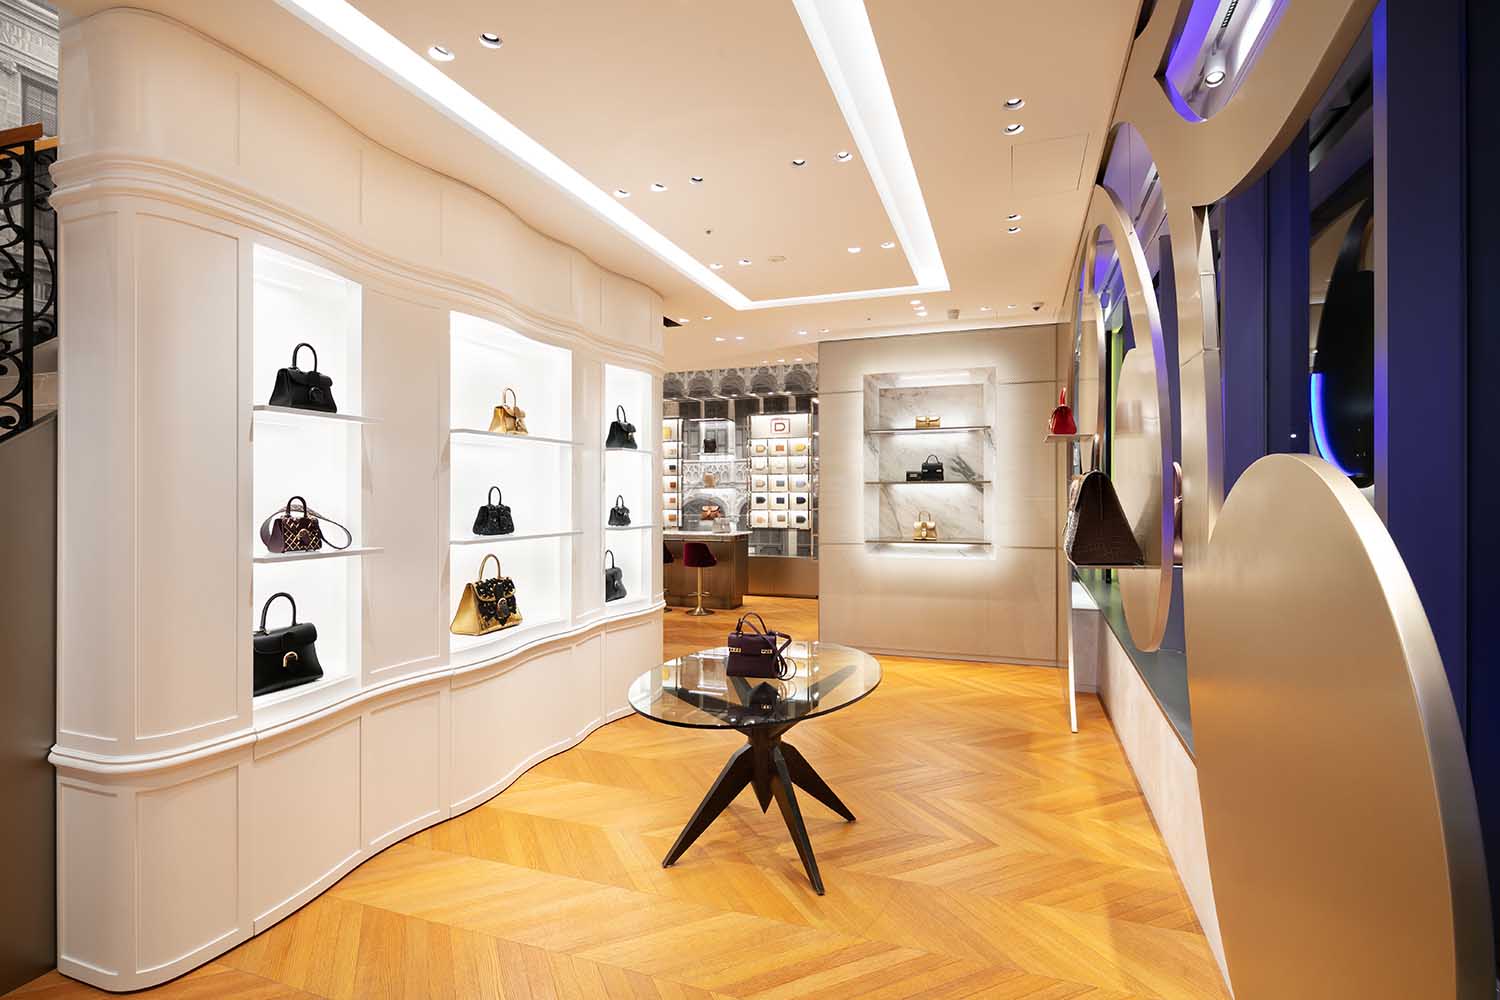 Louis Vuitton - Tokyo Flagship Store by UNStudio 